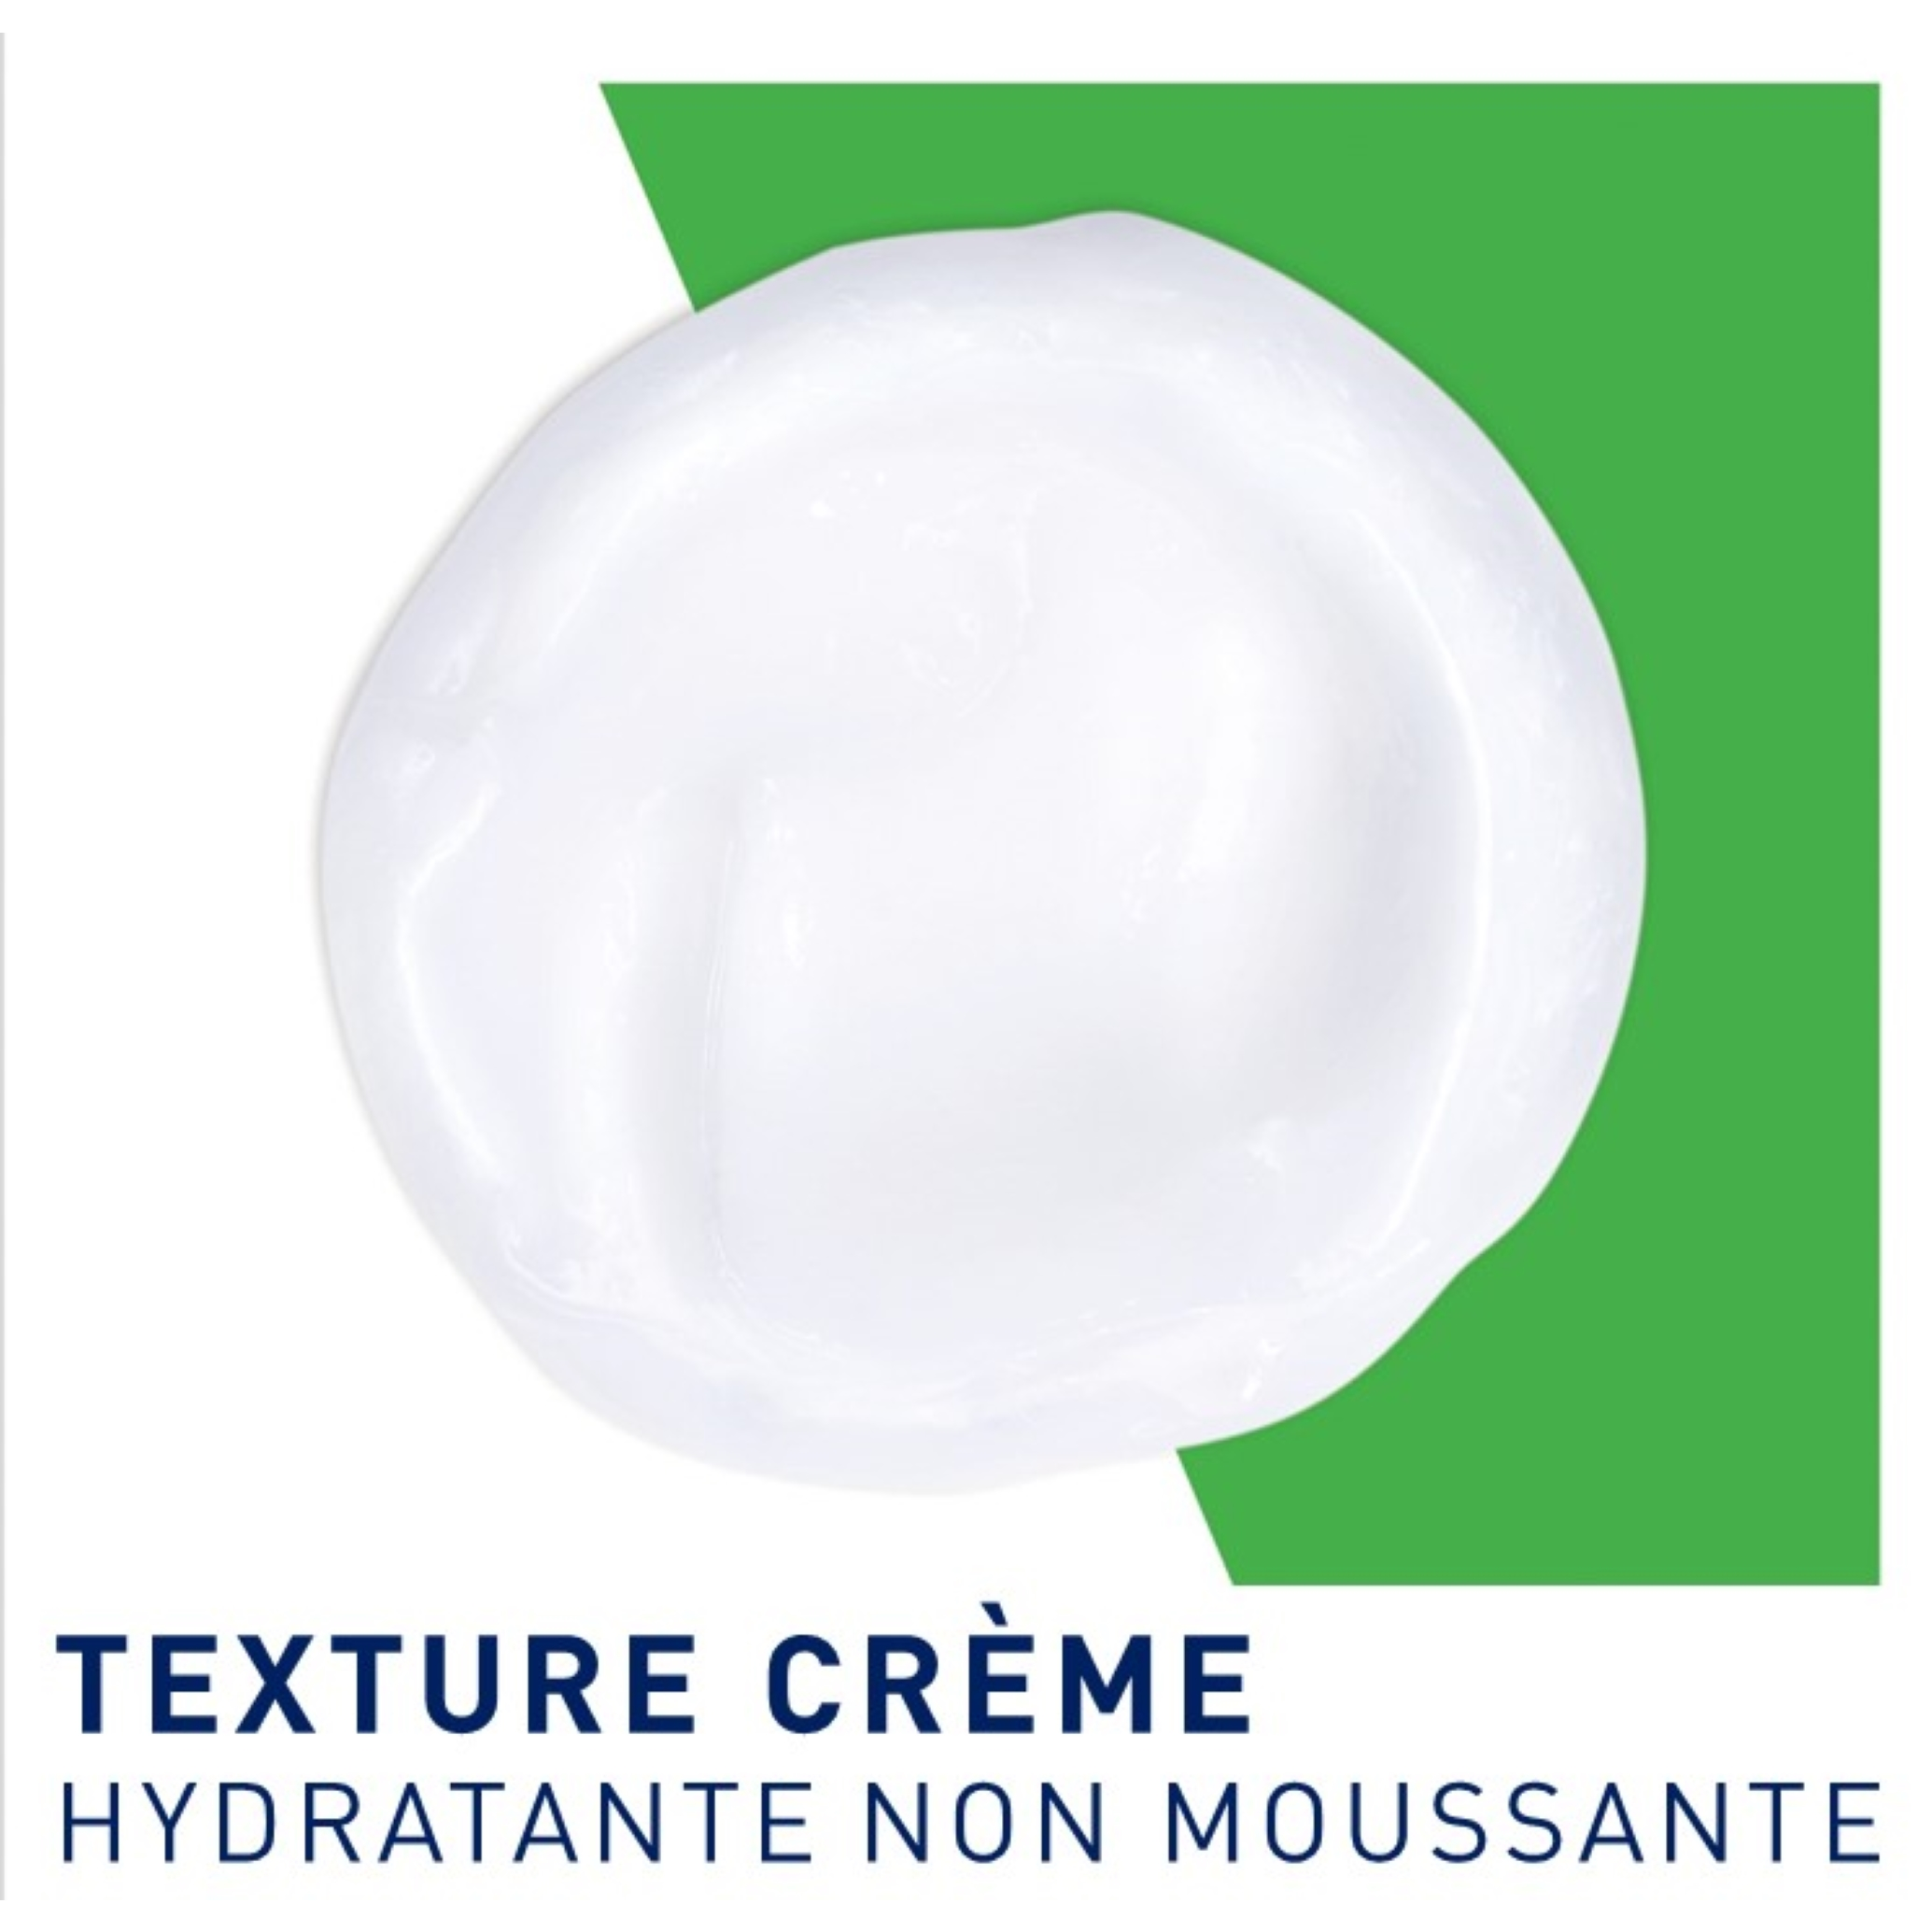 Crème Lavante Hydratante 473ml